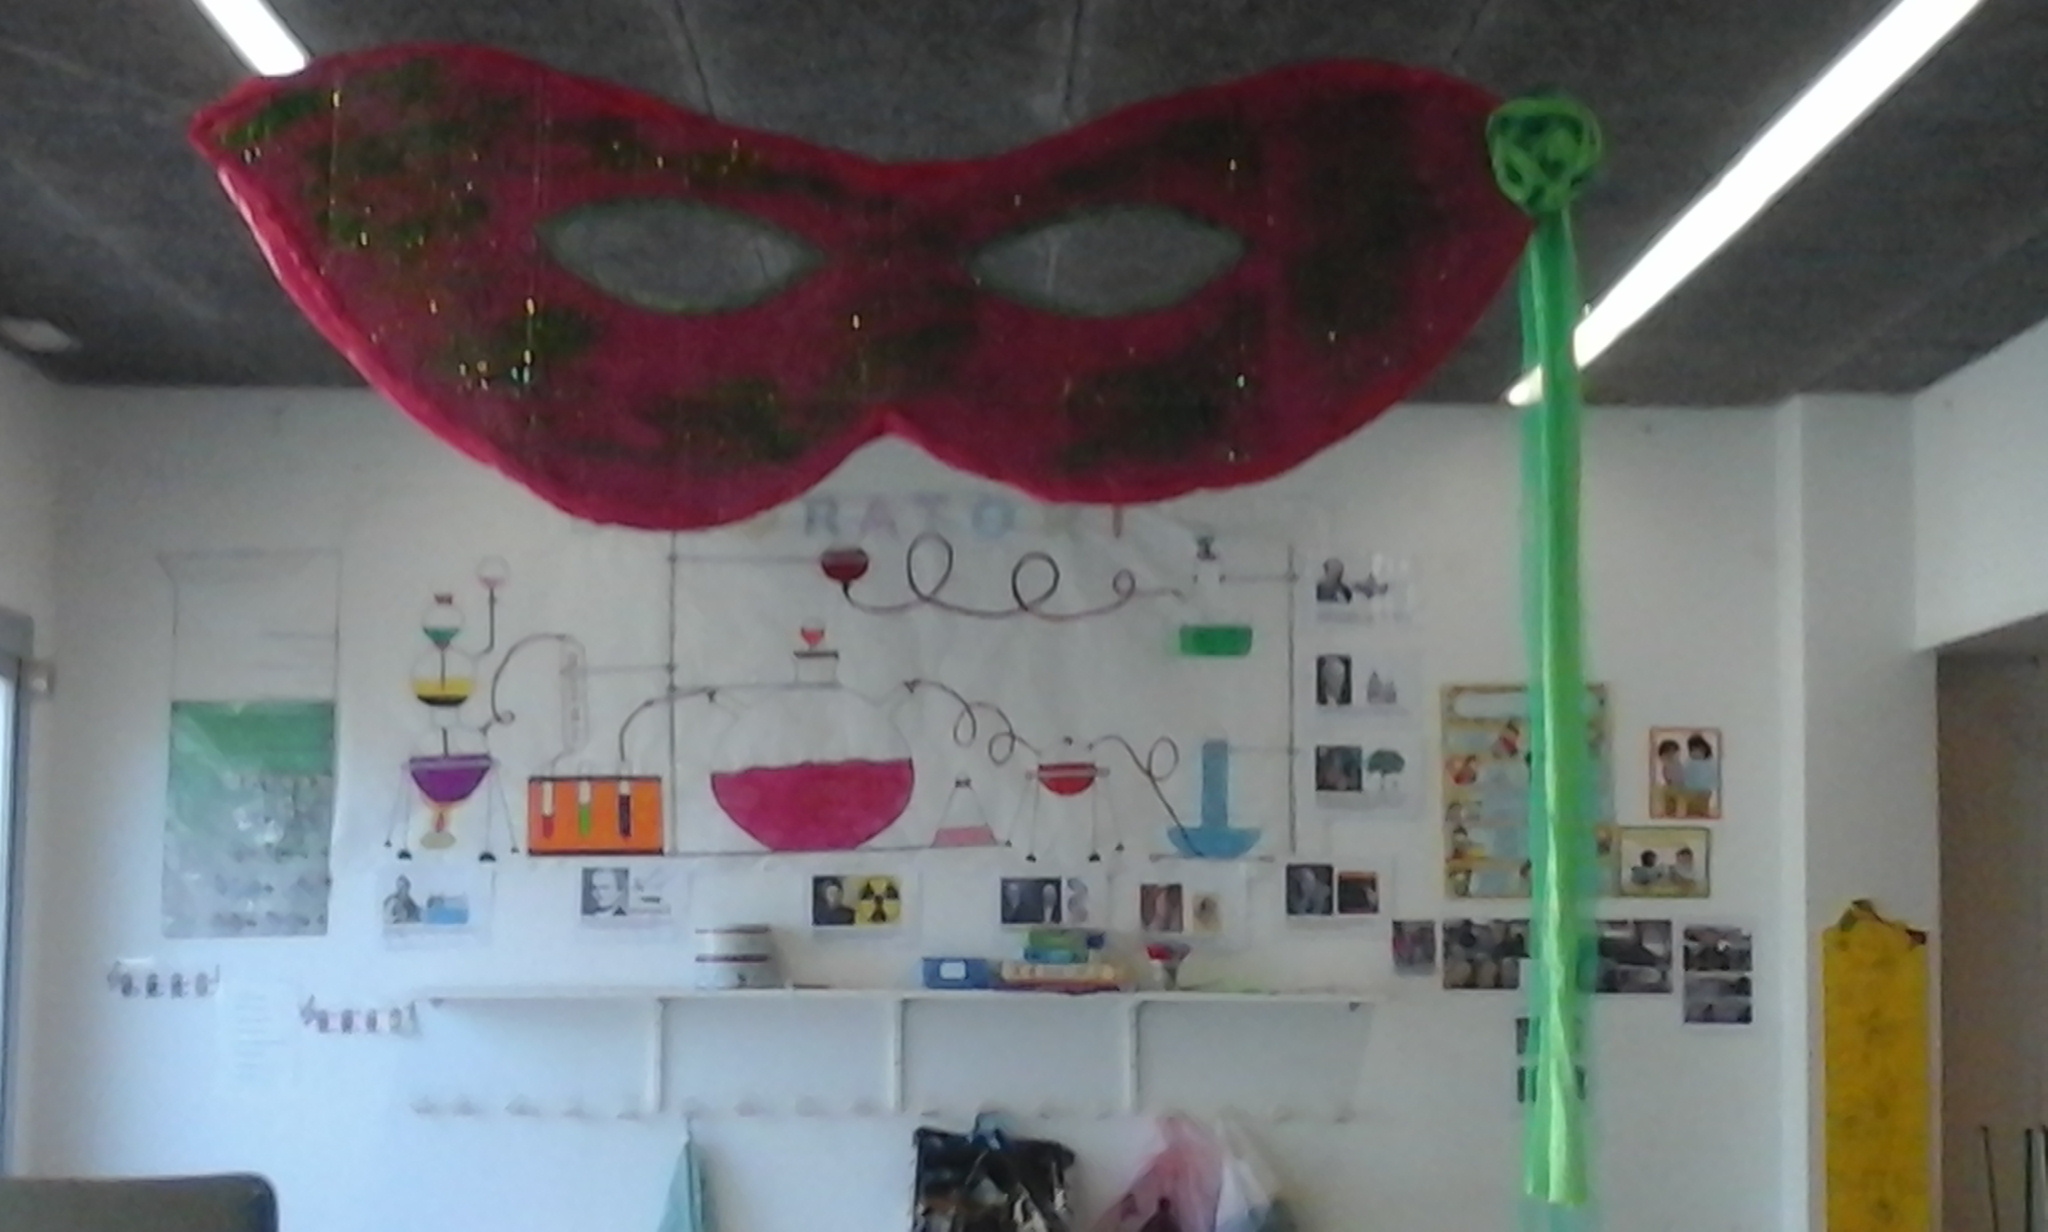 Han gaudit llançant purpurina per tota la màscara de Carnaval, i els va quedar ben maca!